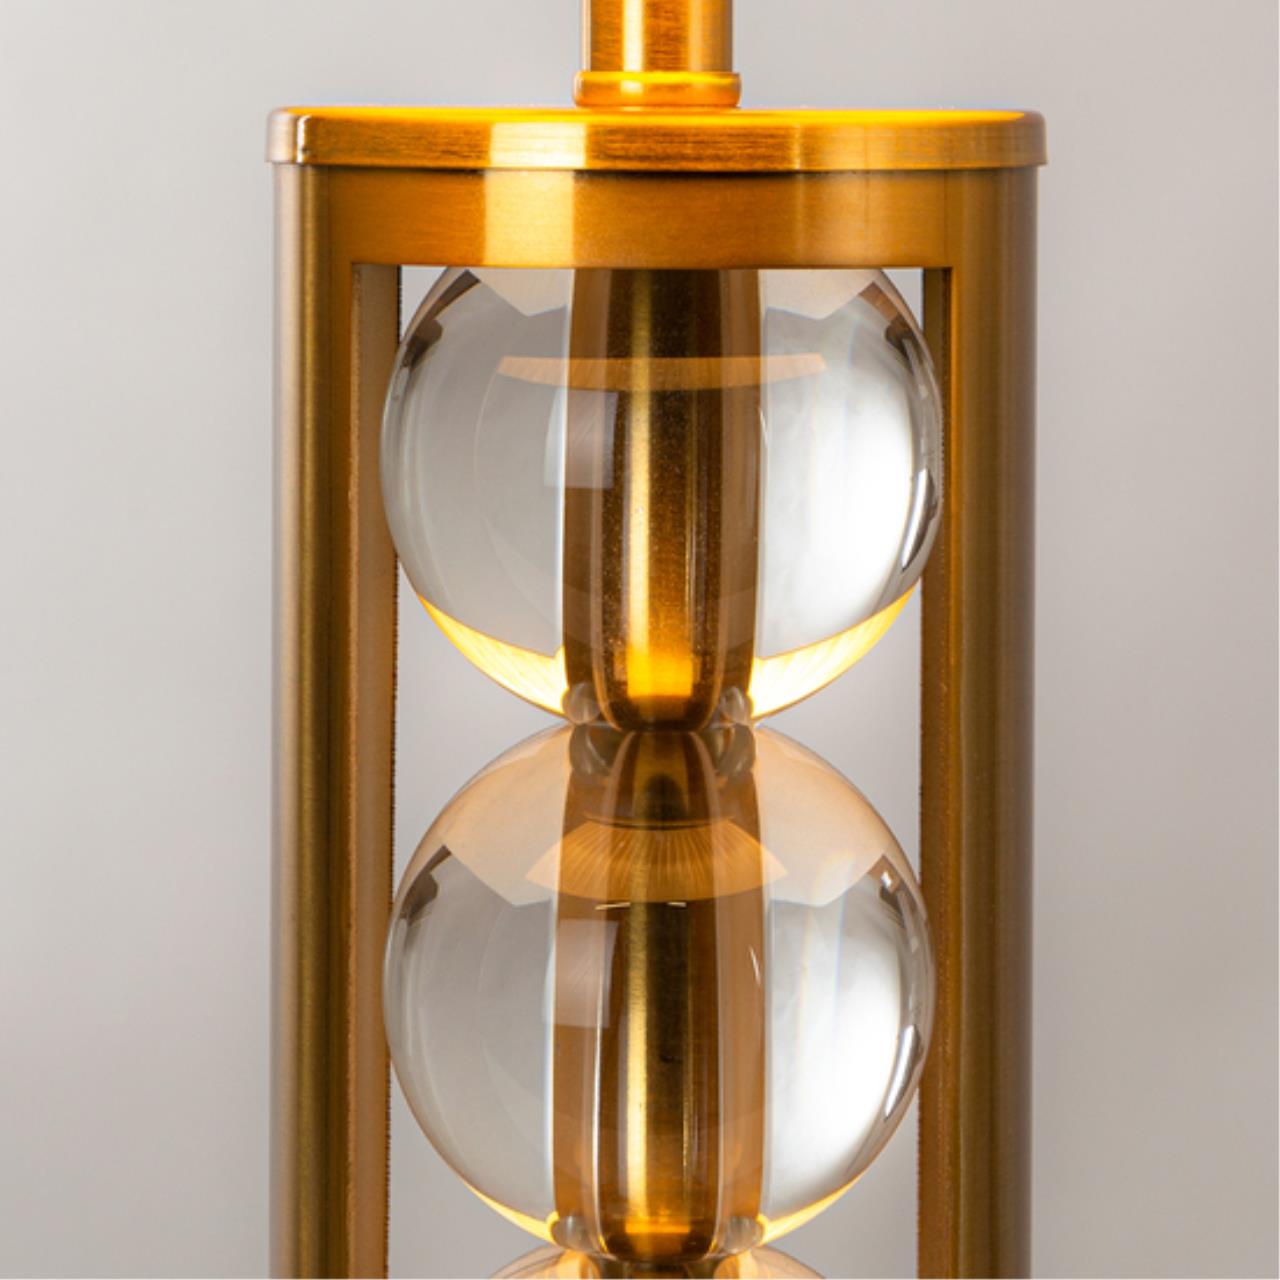 Интерьерная настольная лампа Arte lamp A4062LT-1PB